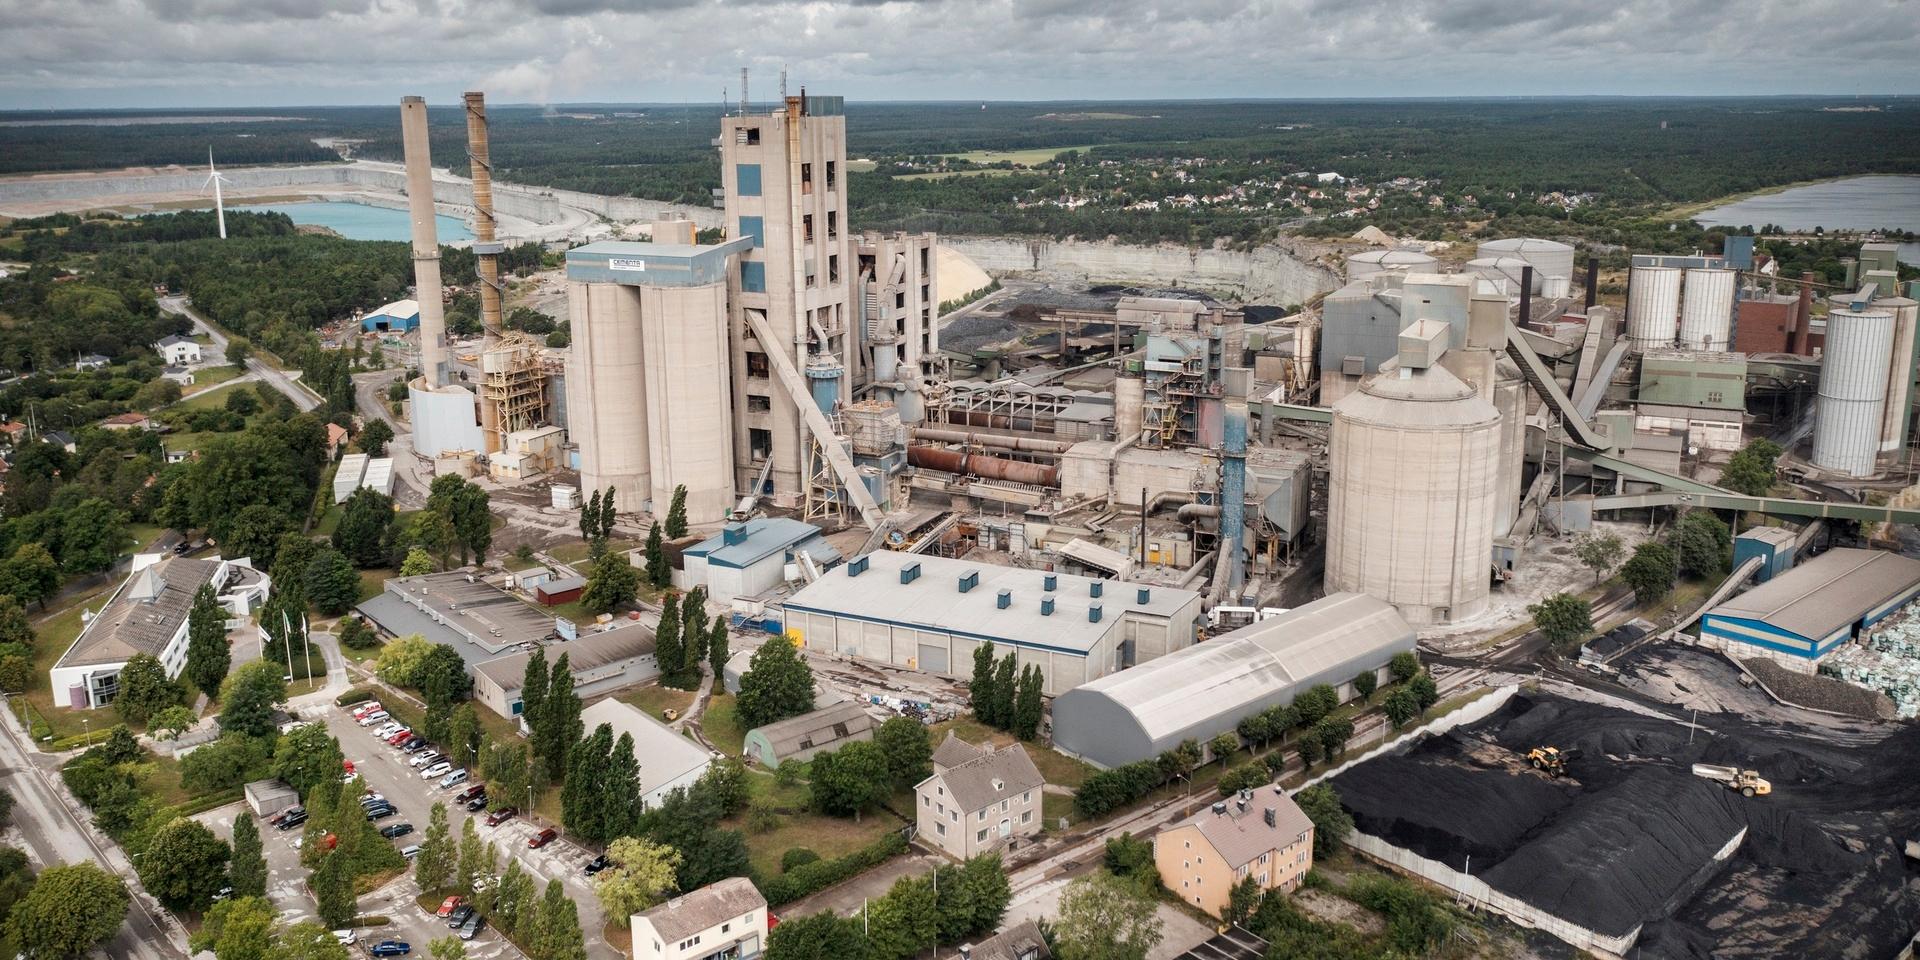 Cementas fabrik i Slite på Gotland kan stoppa sin brytning av kalk och produktion av cement på Gotland den 31 oktober. Arkivbild.